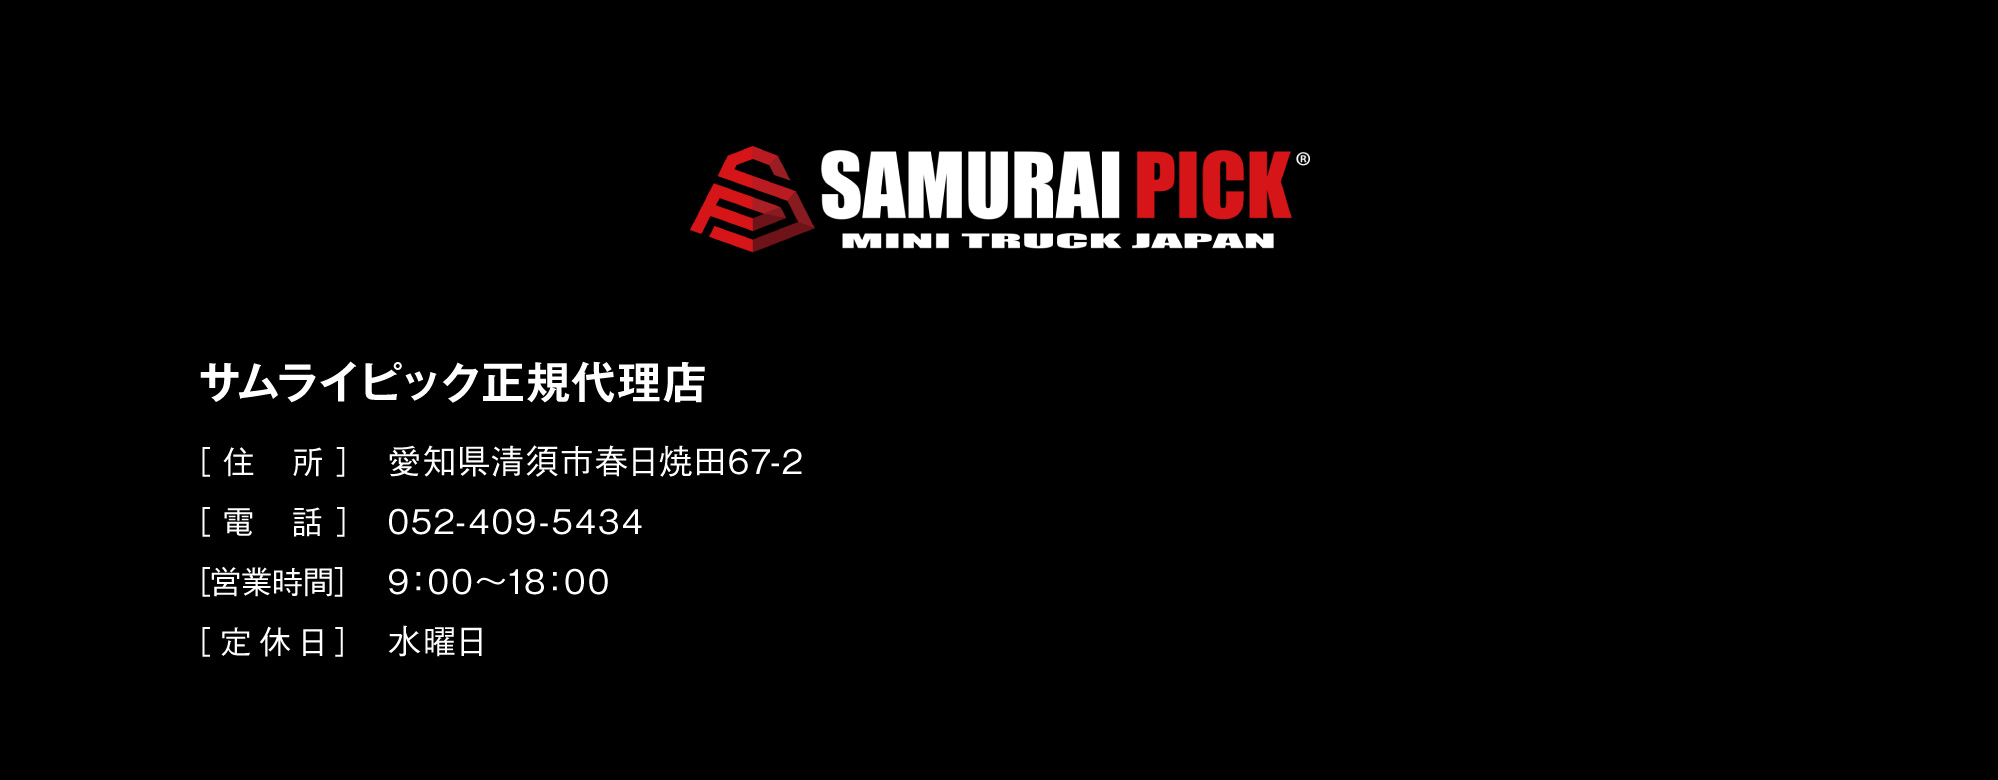 SAMURAI PICK サムライピック